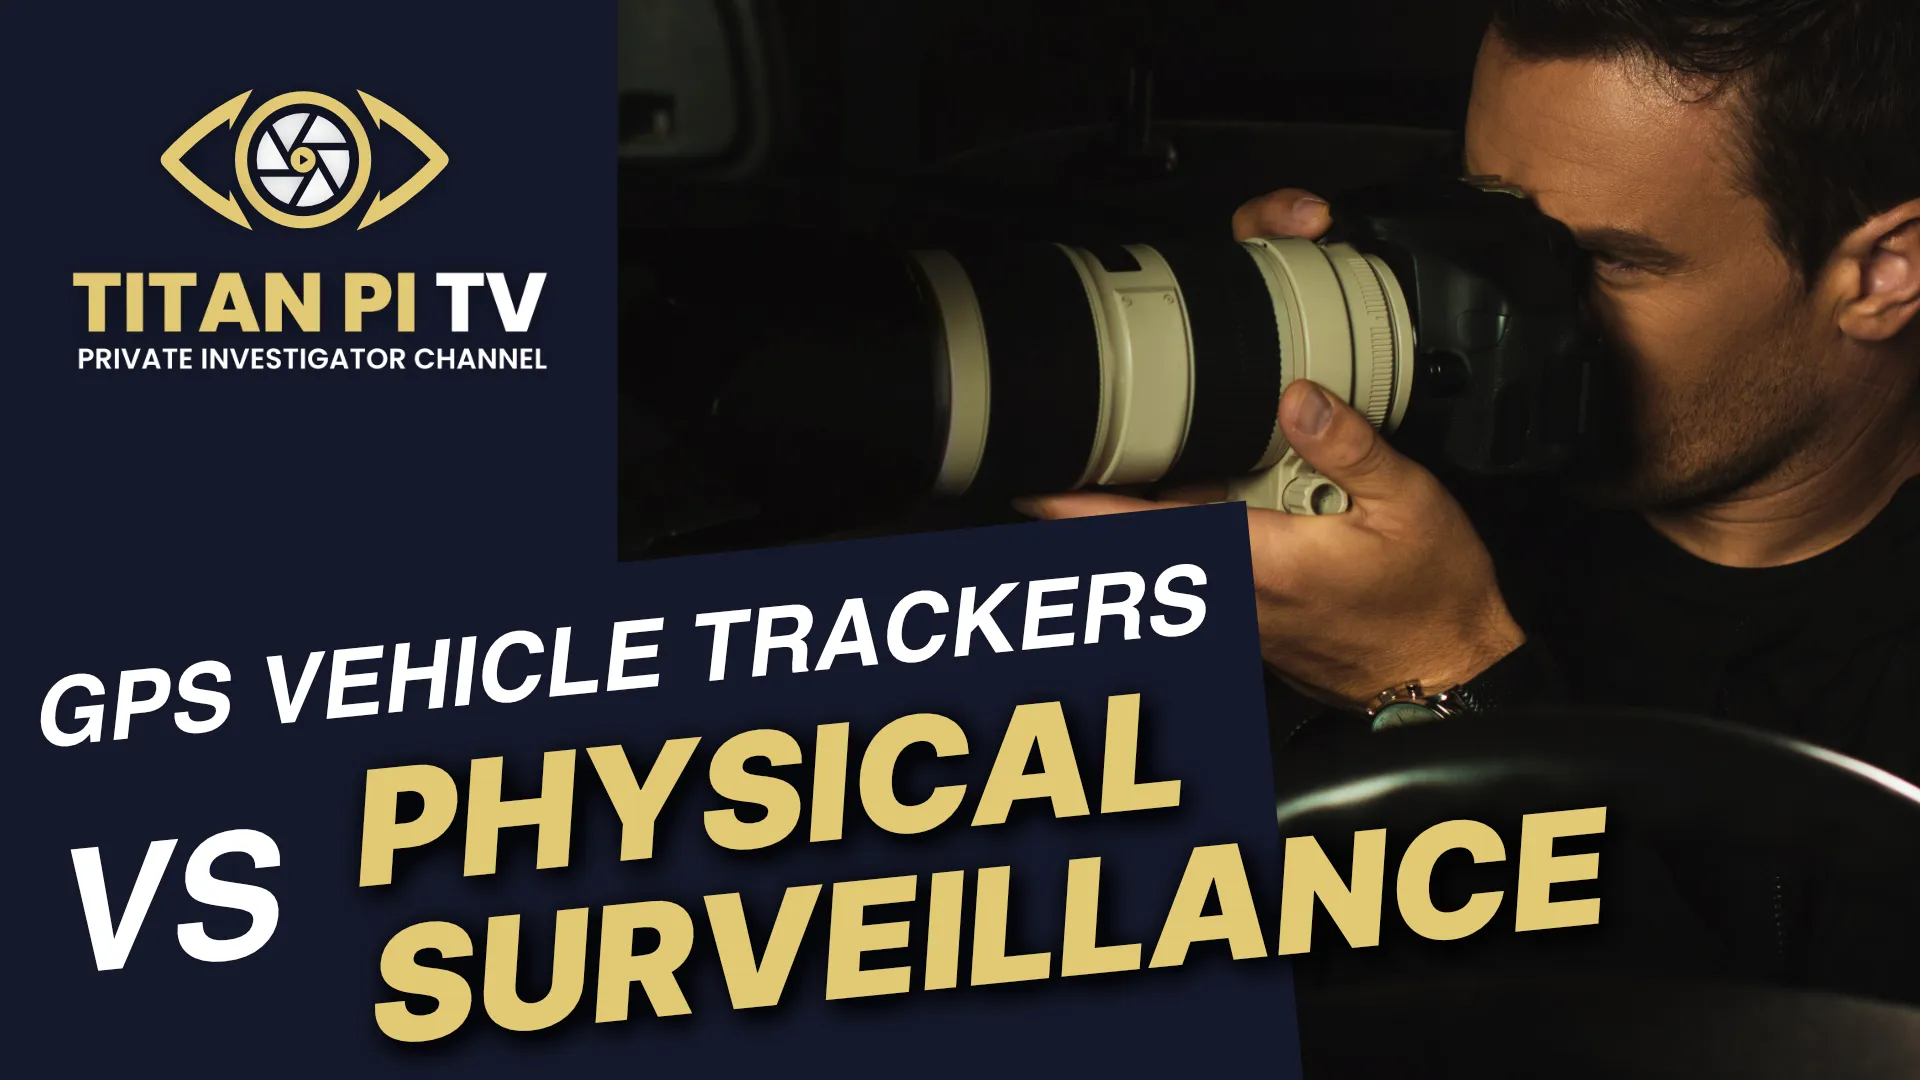 GPS Vehicle Trackers VS Physical Surveillance E17 Titan PI TV